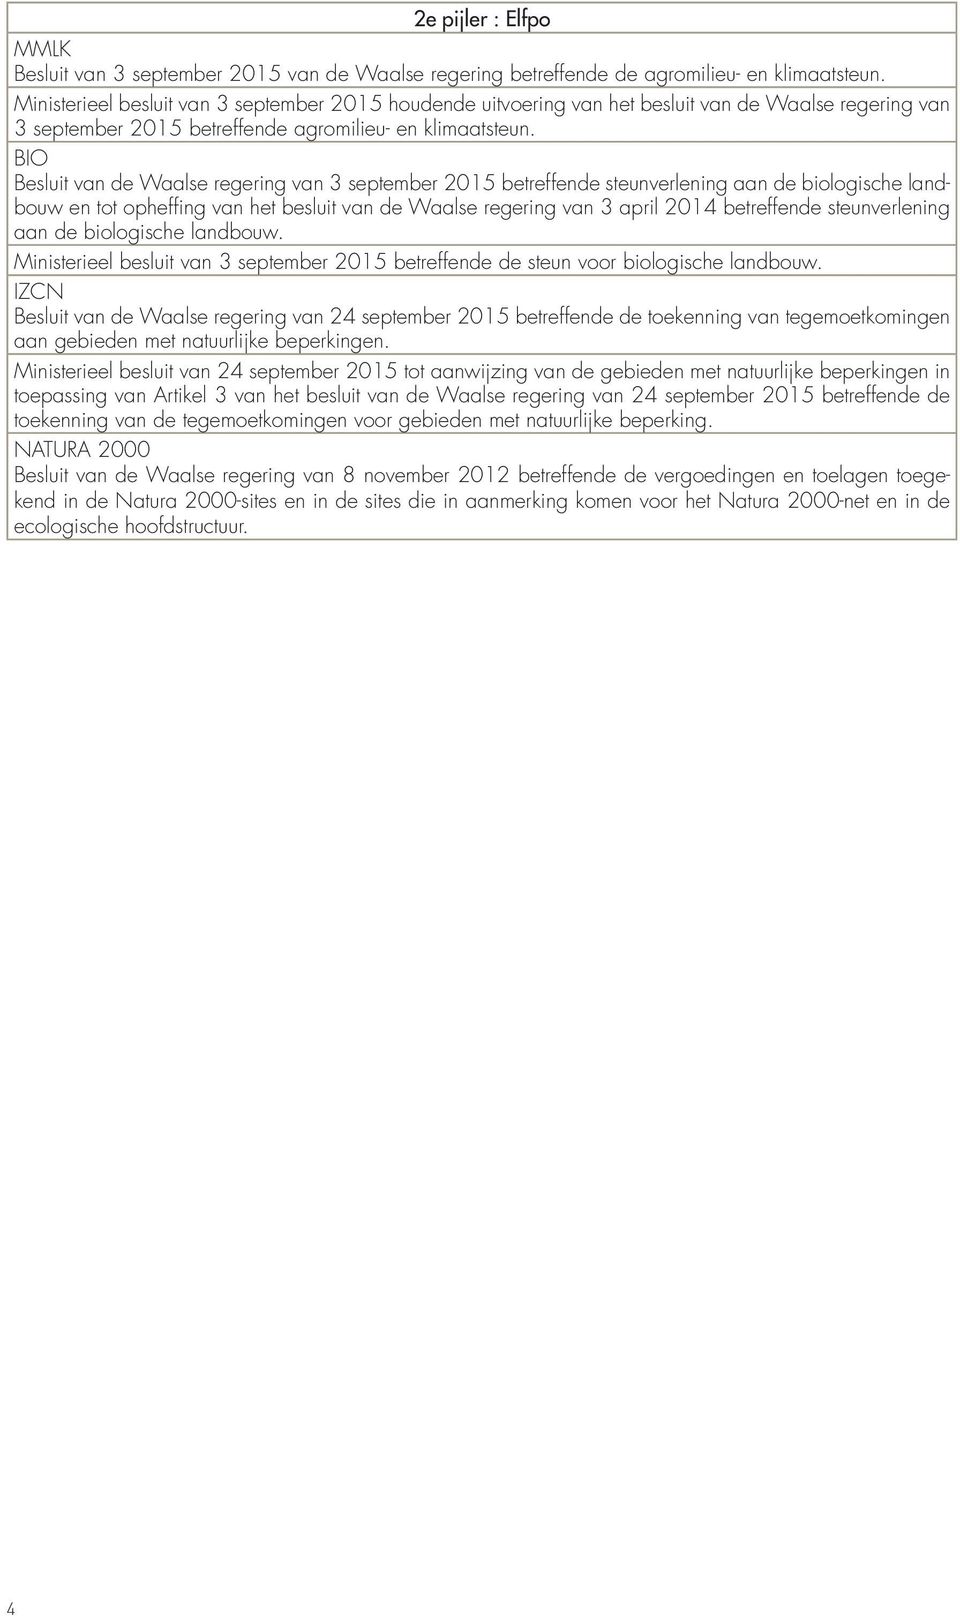 BIO Besluit van de Waalse regering van 3 september 2015 betreffende steunverlening aan de biologische landbouw en tot opheffing van het besluit van de Waalse regering van 3 april 2014 betreffende